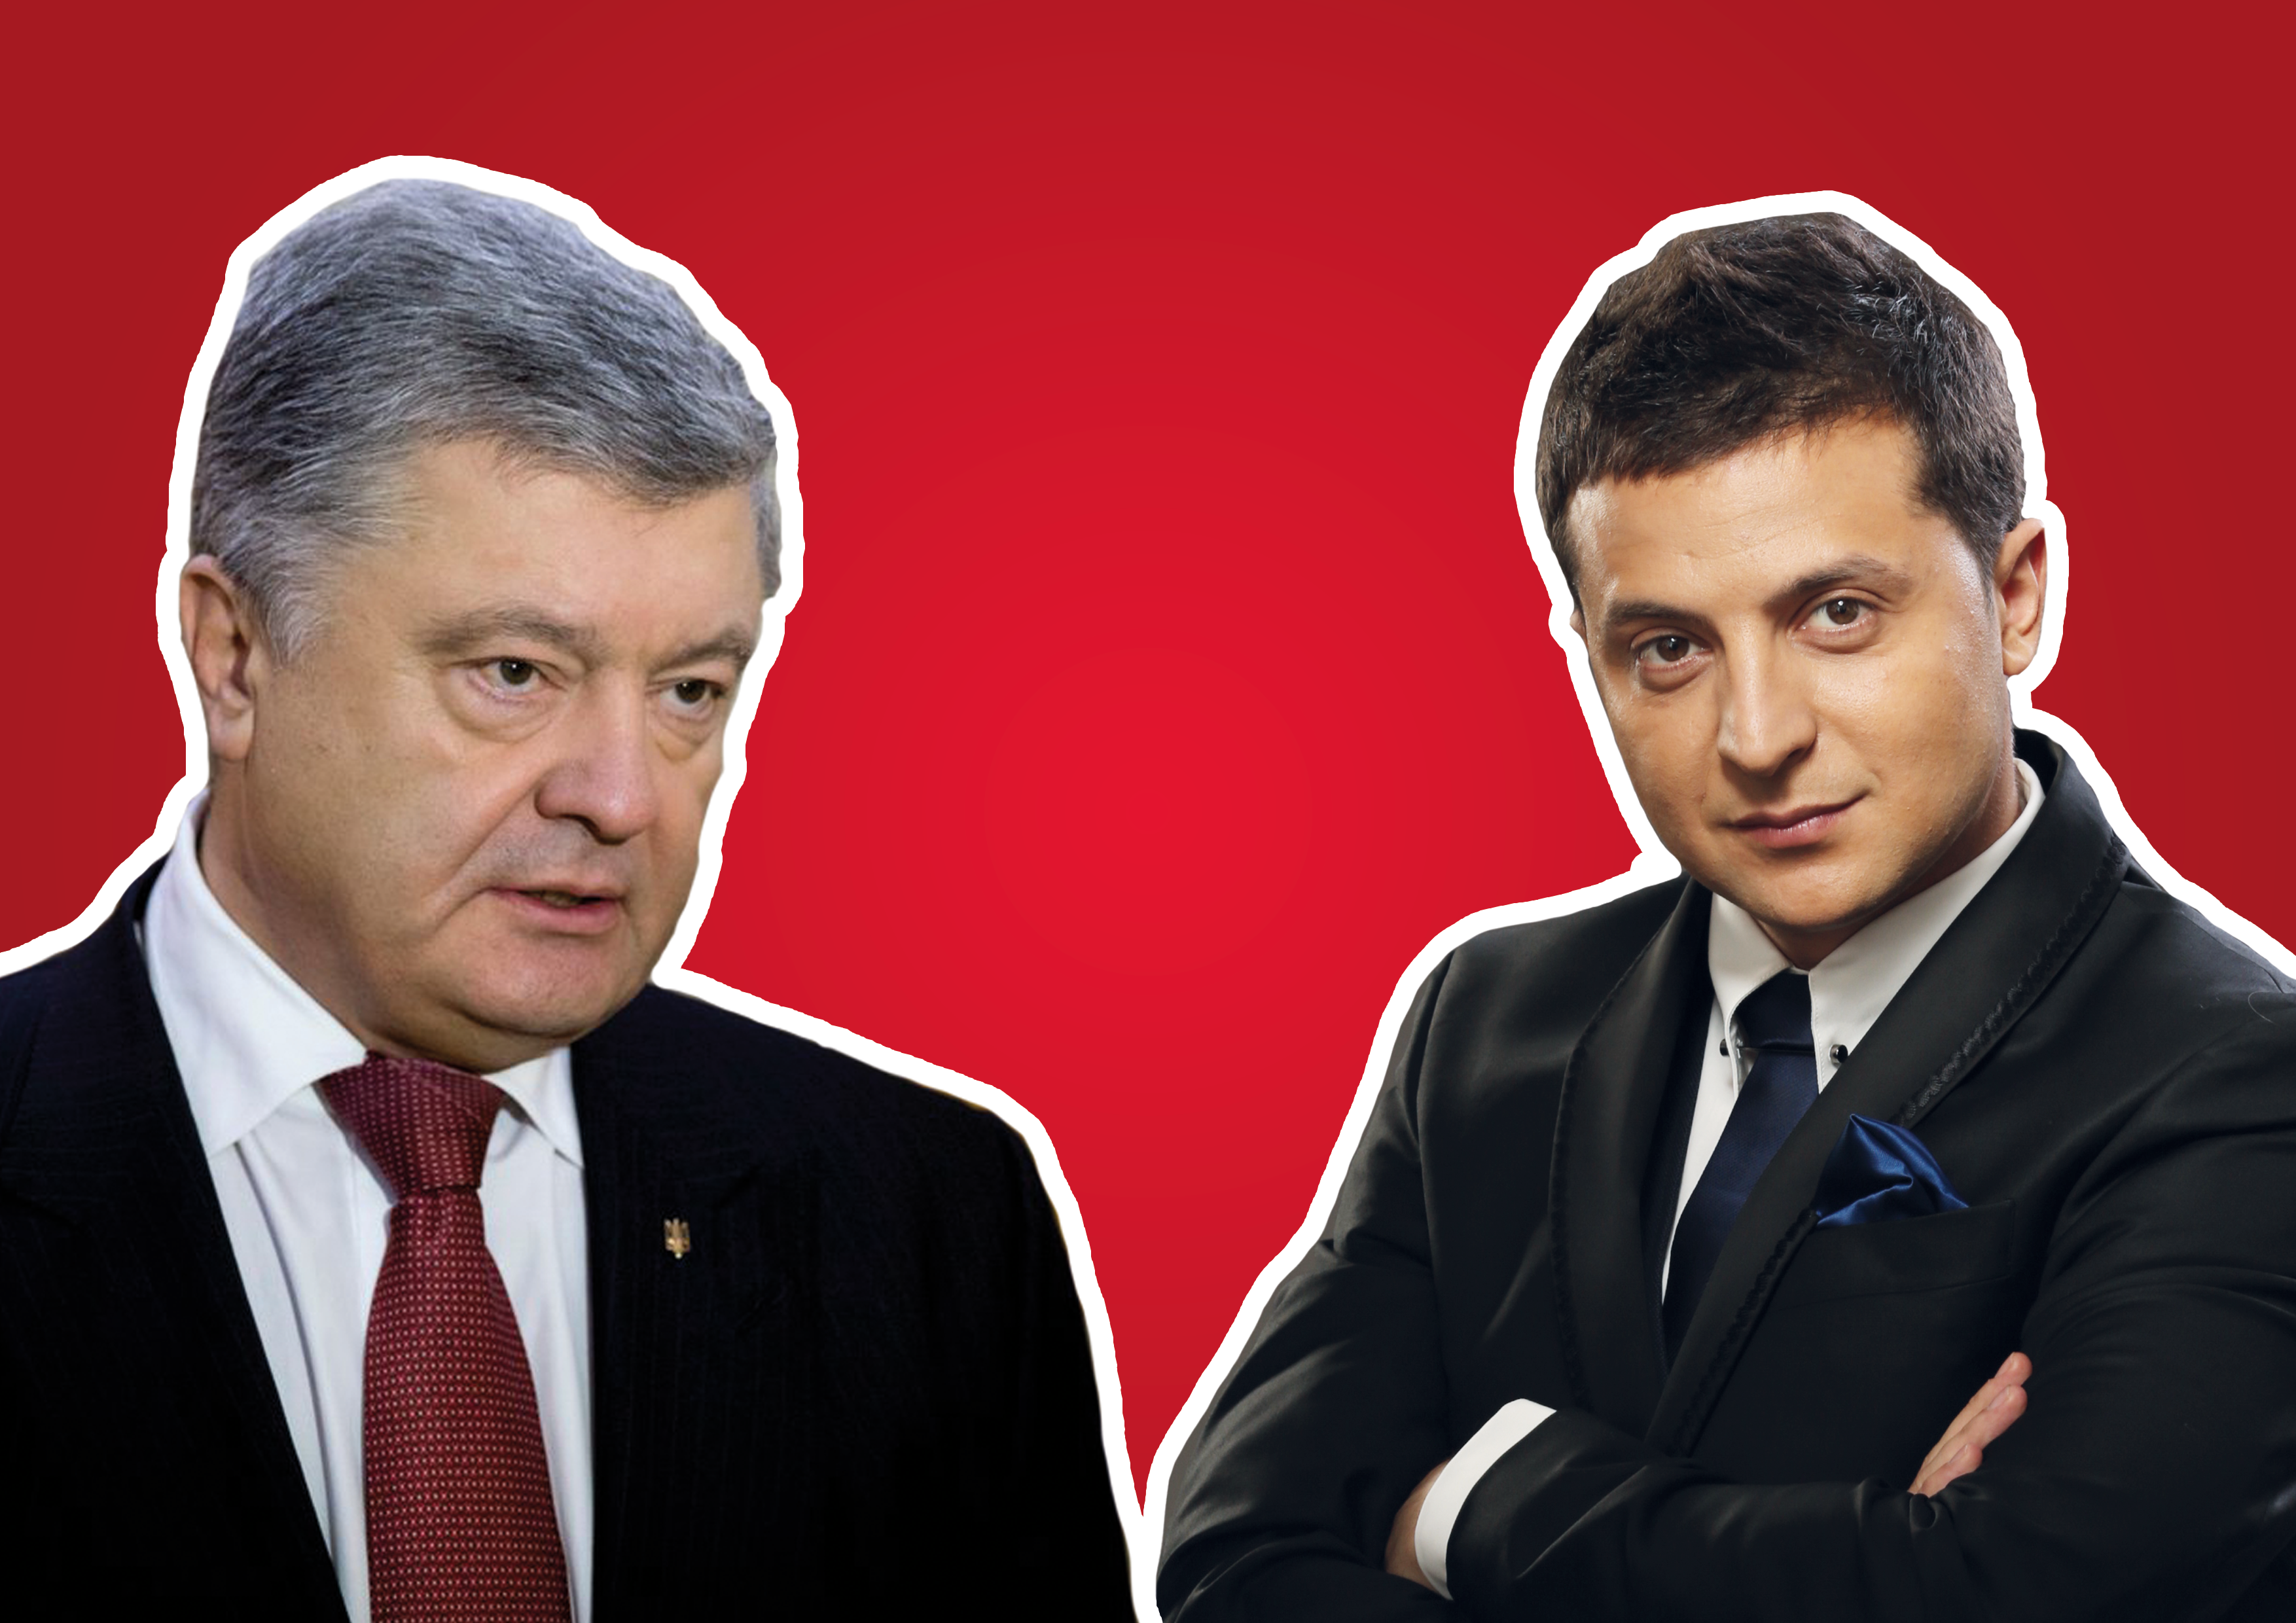 Выборы 2019 Украина - прогноз на выборы президента Украины 2019